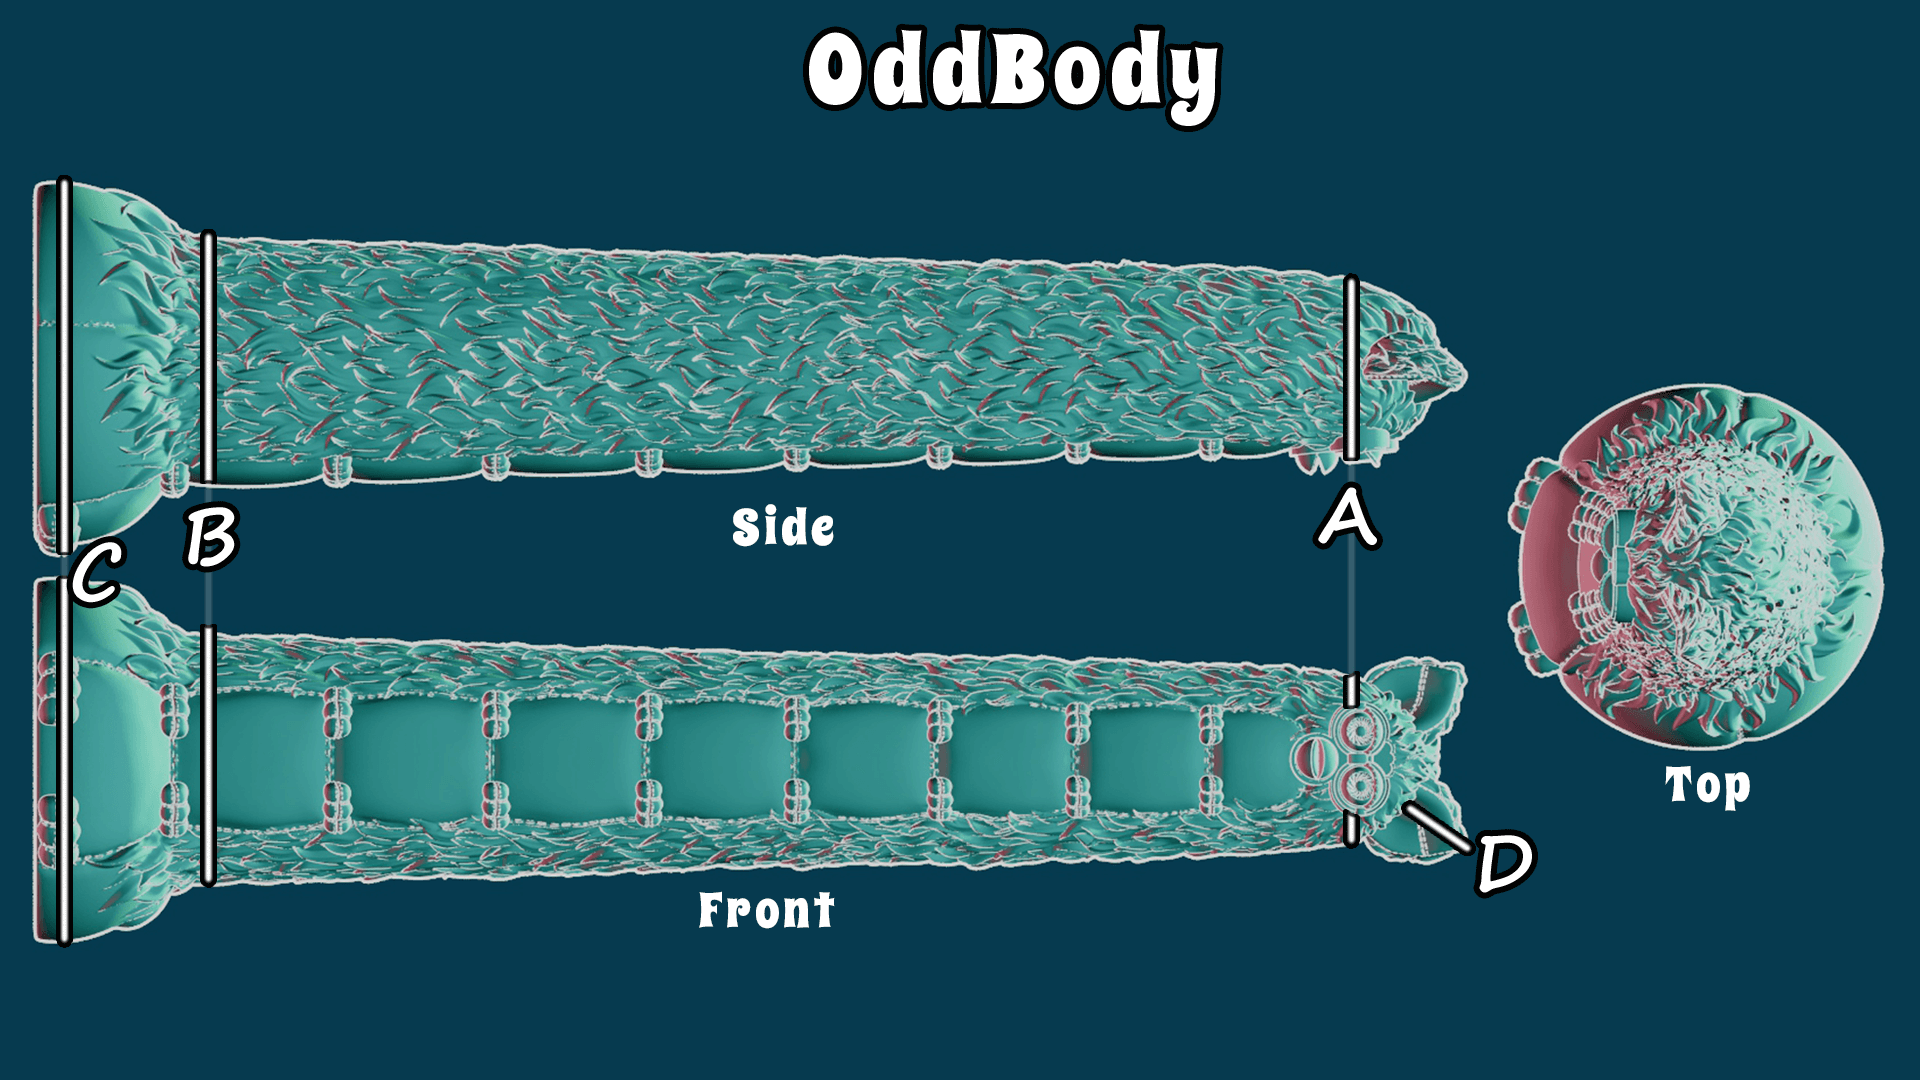 OddBody